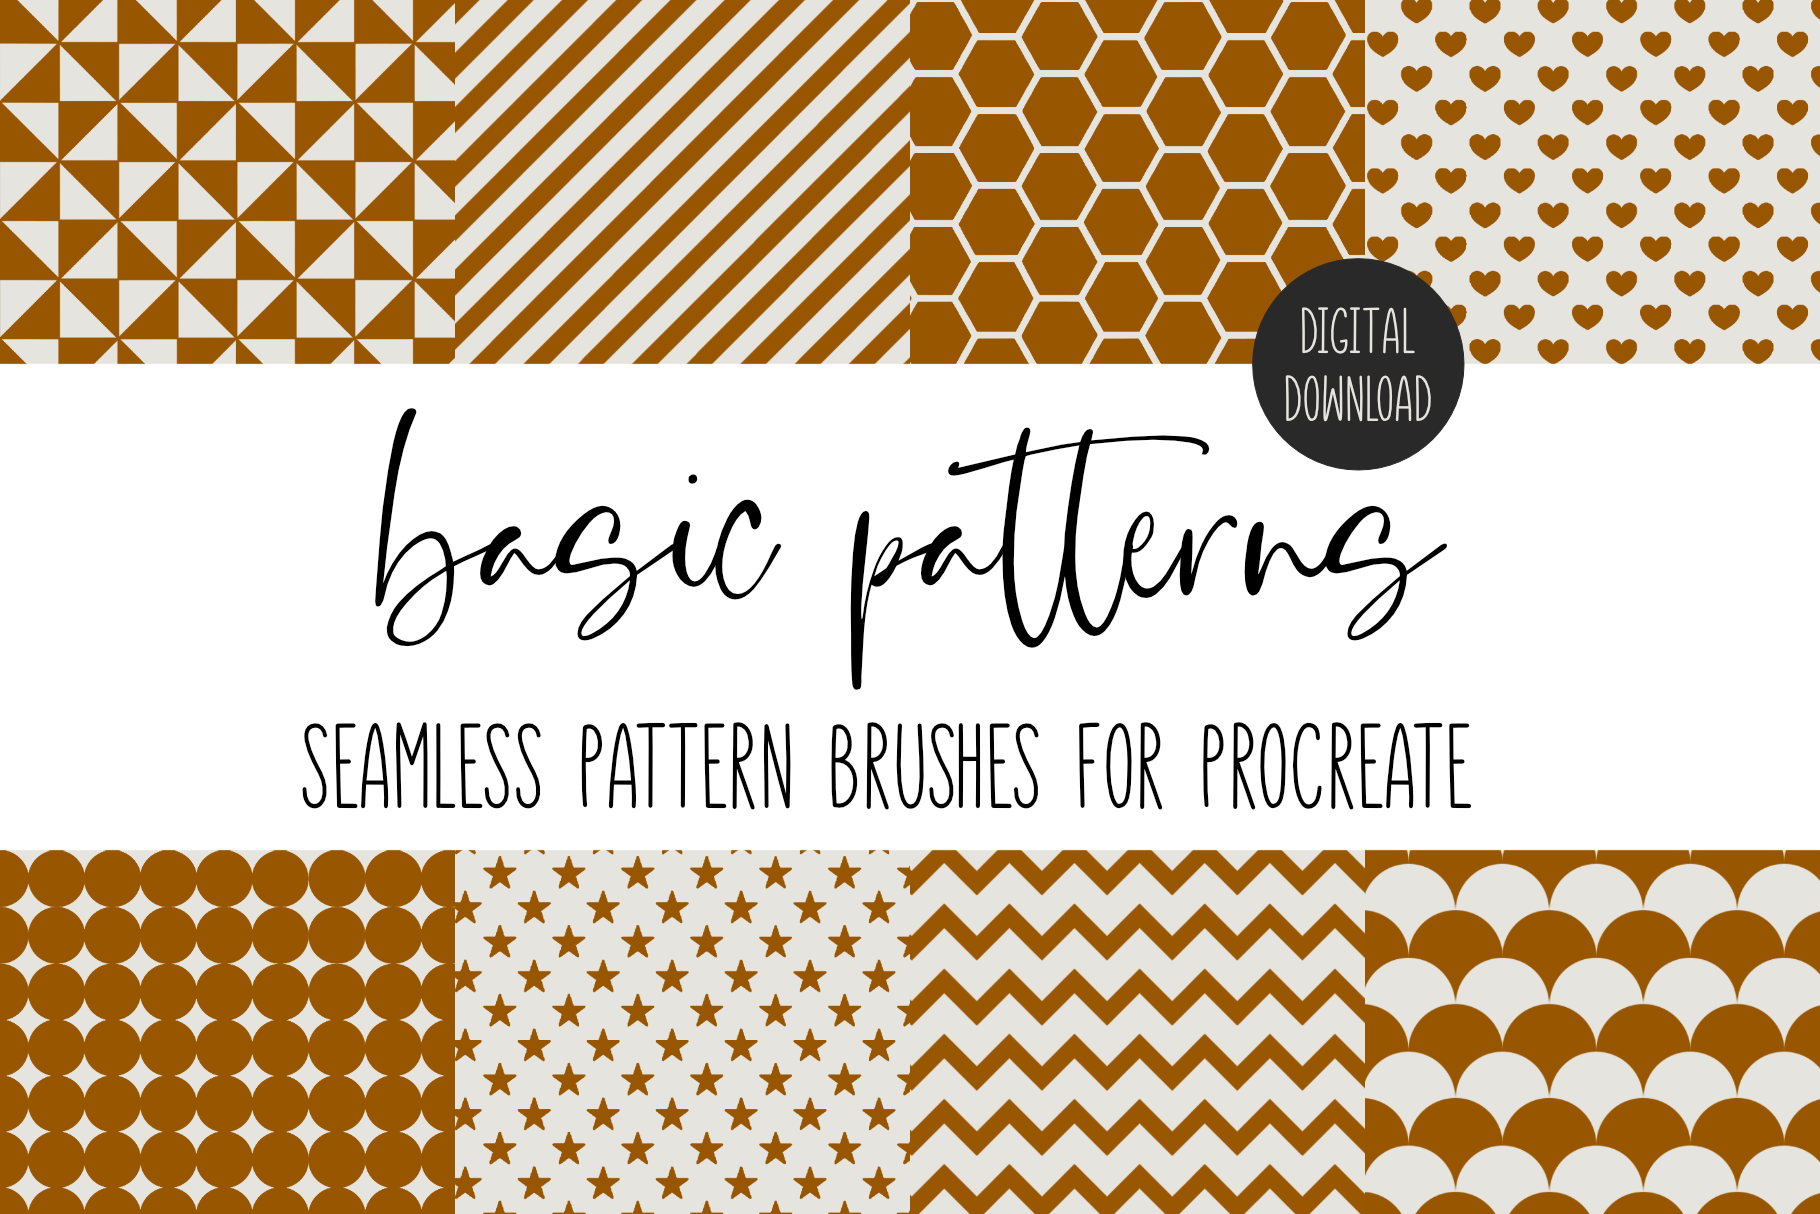 Procreate Basic Pattern Brushes